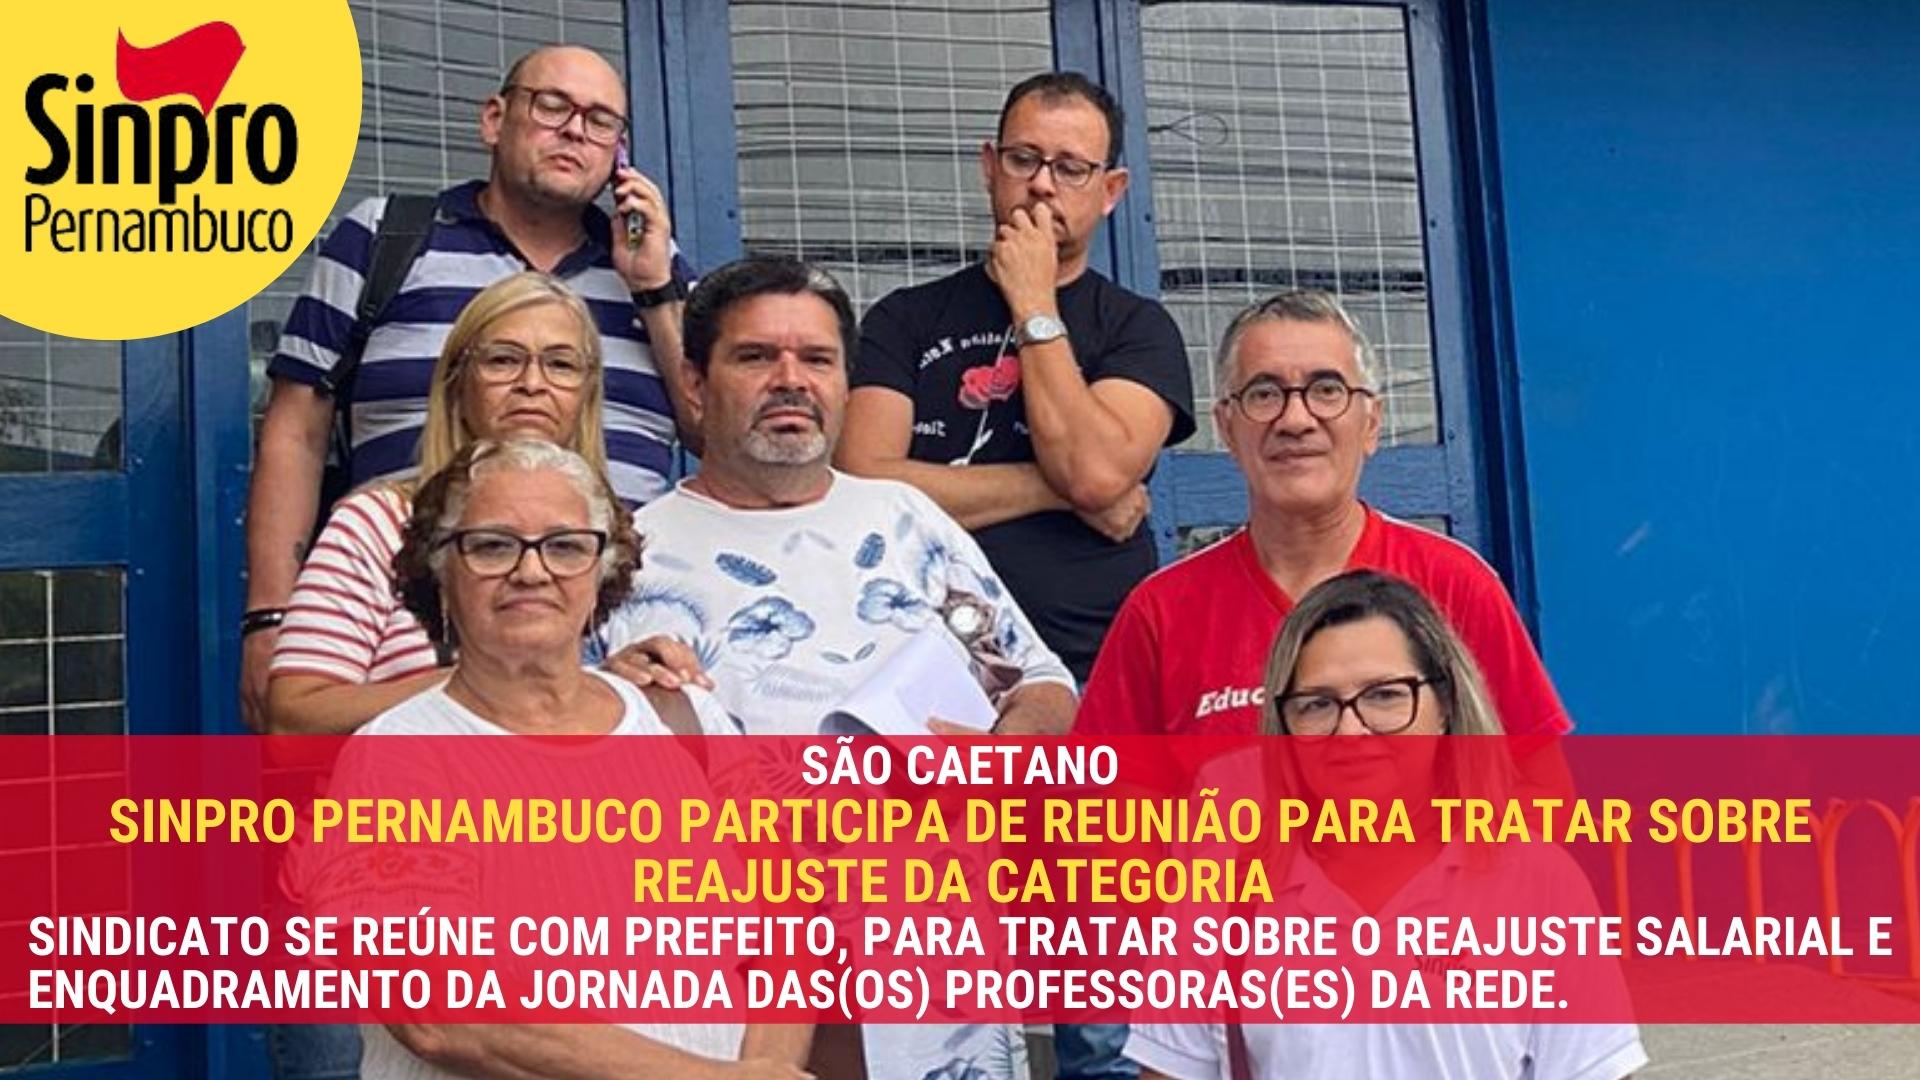 SÃO CAETANO: SINPRO PERNAMBUCO PARTICIPA DE REUNIÃO PARA TRATAR SOBRE REAJUSTE DA CATEGORIA